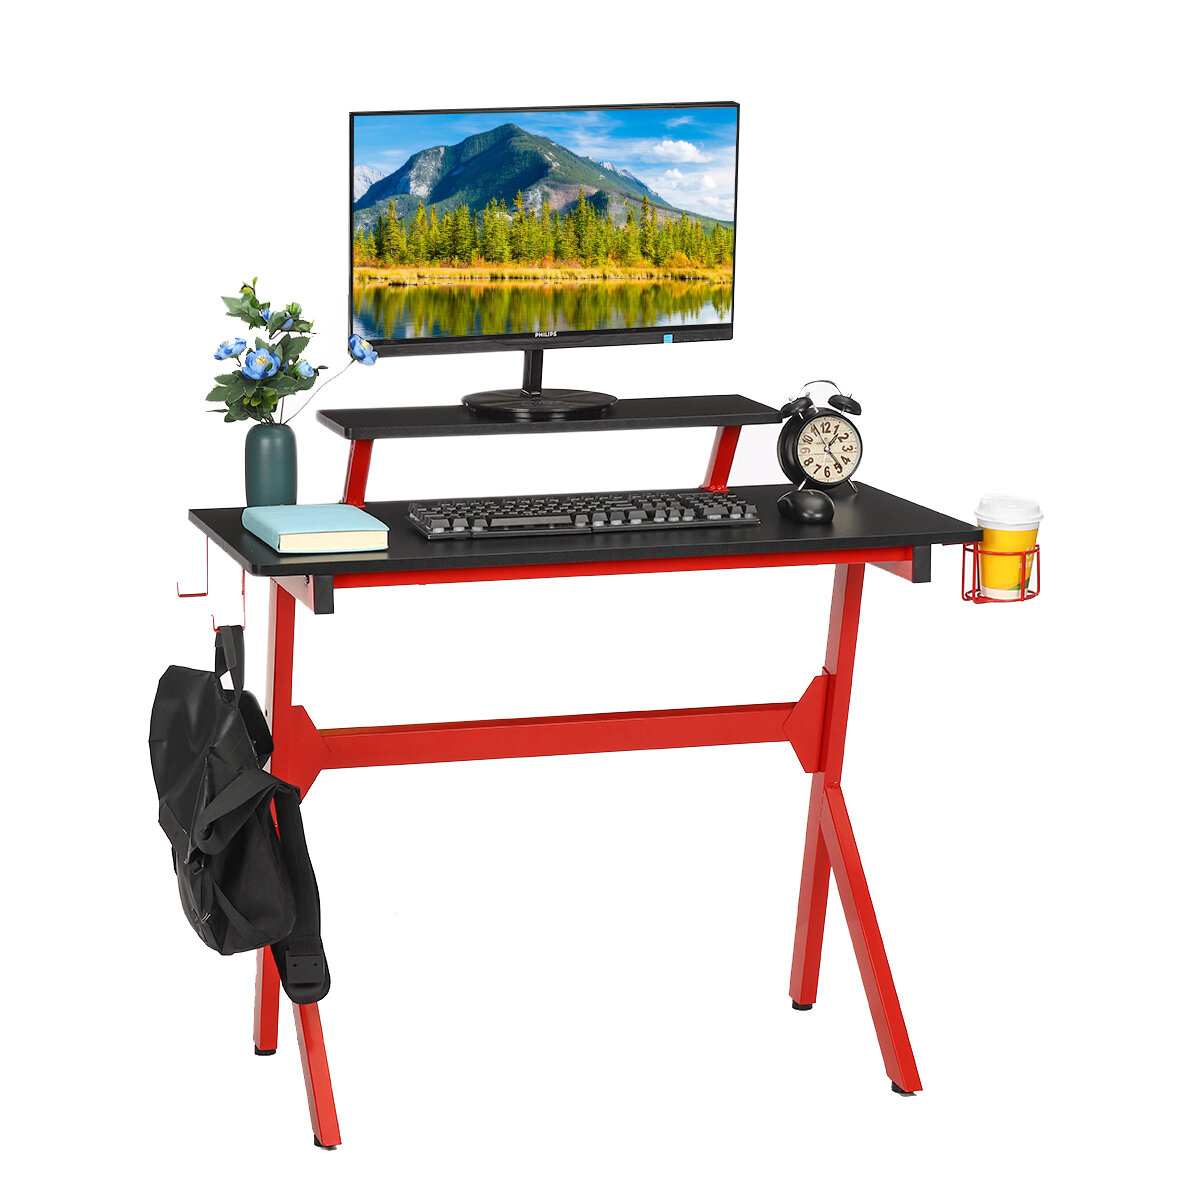 Στα 59.20 € από αποθήκη Τσεχίας | Hoffree Ergonomic Gaming Desk E-sports Computer Office Table PC Laptop Desk Gamer Tables with Cup Holder for iMac